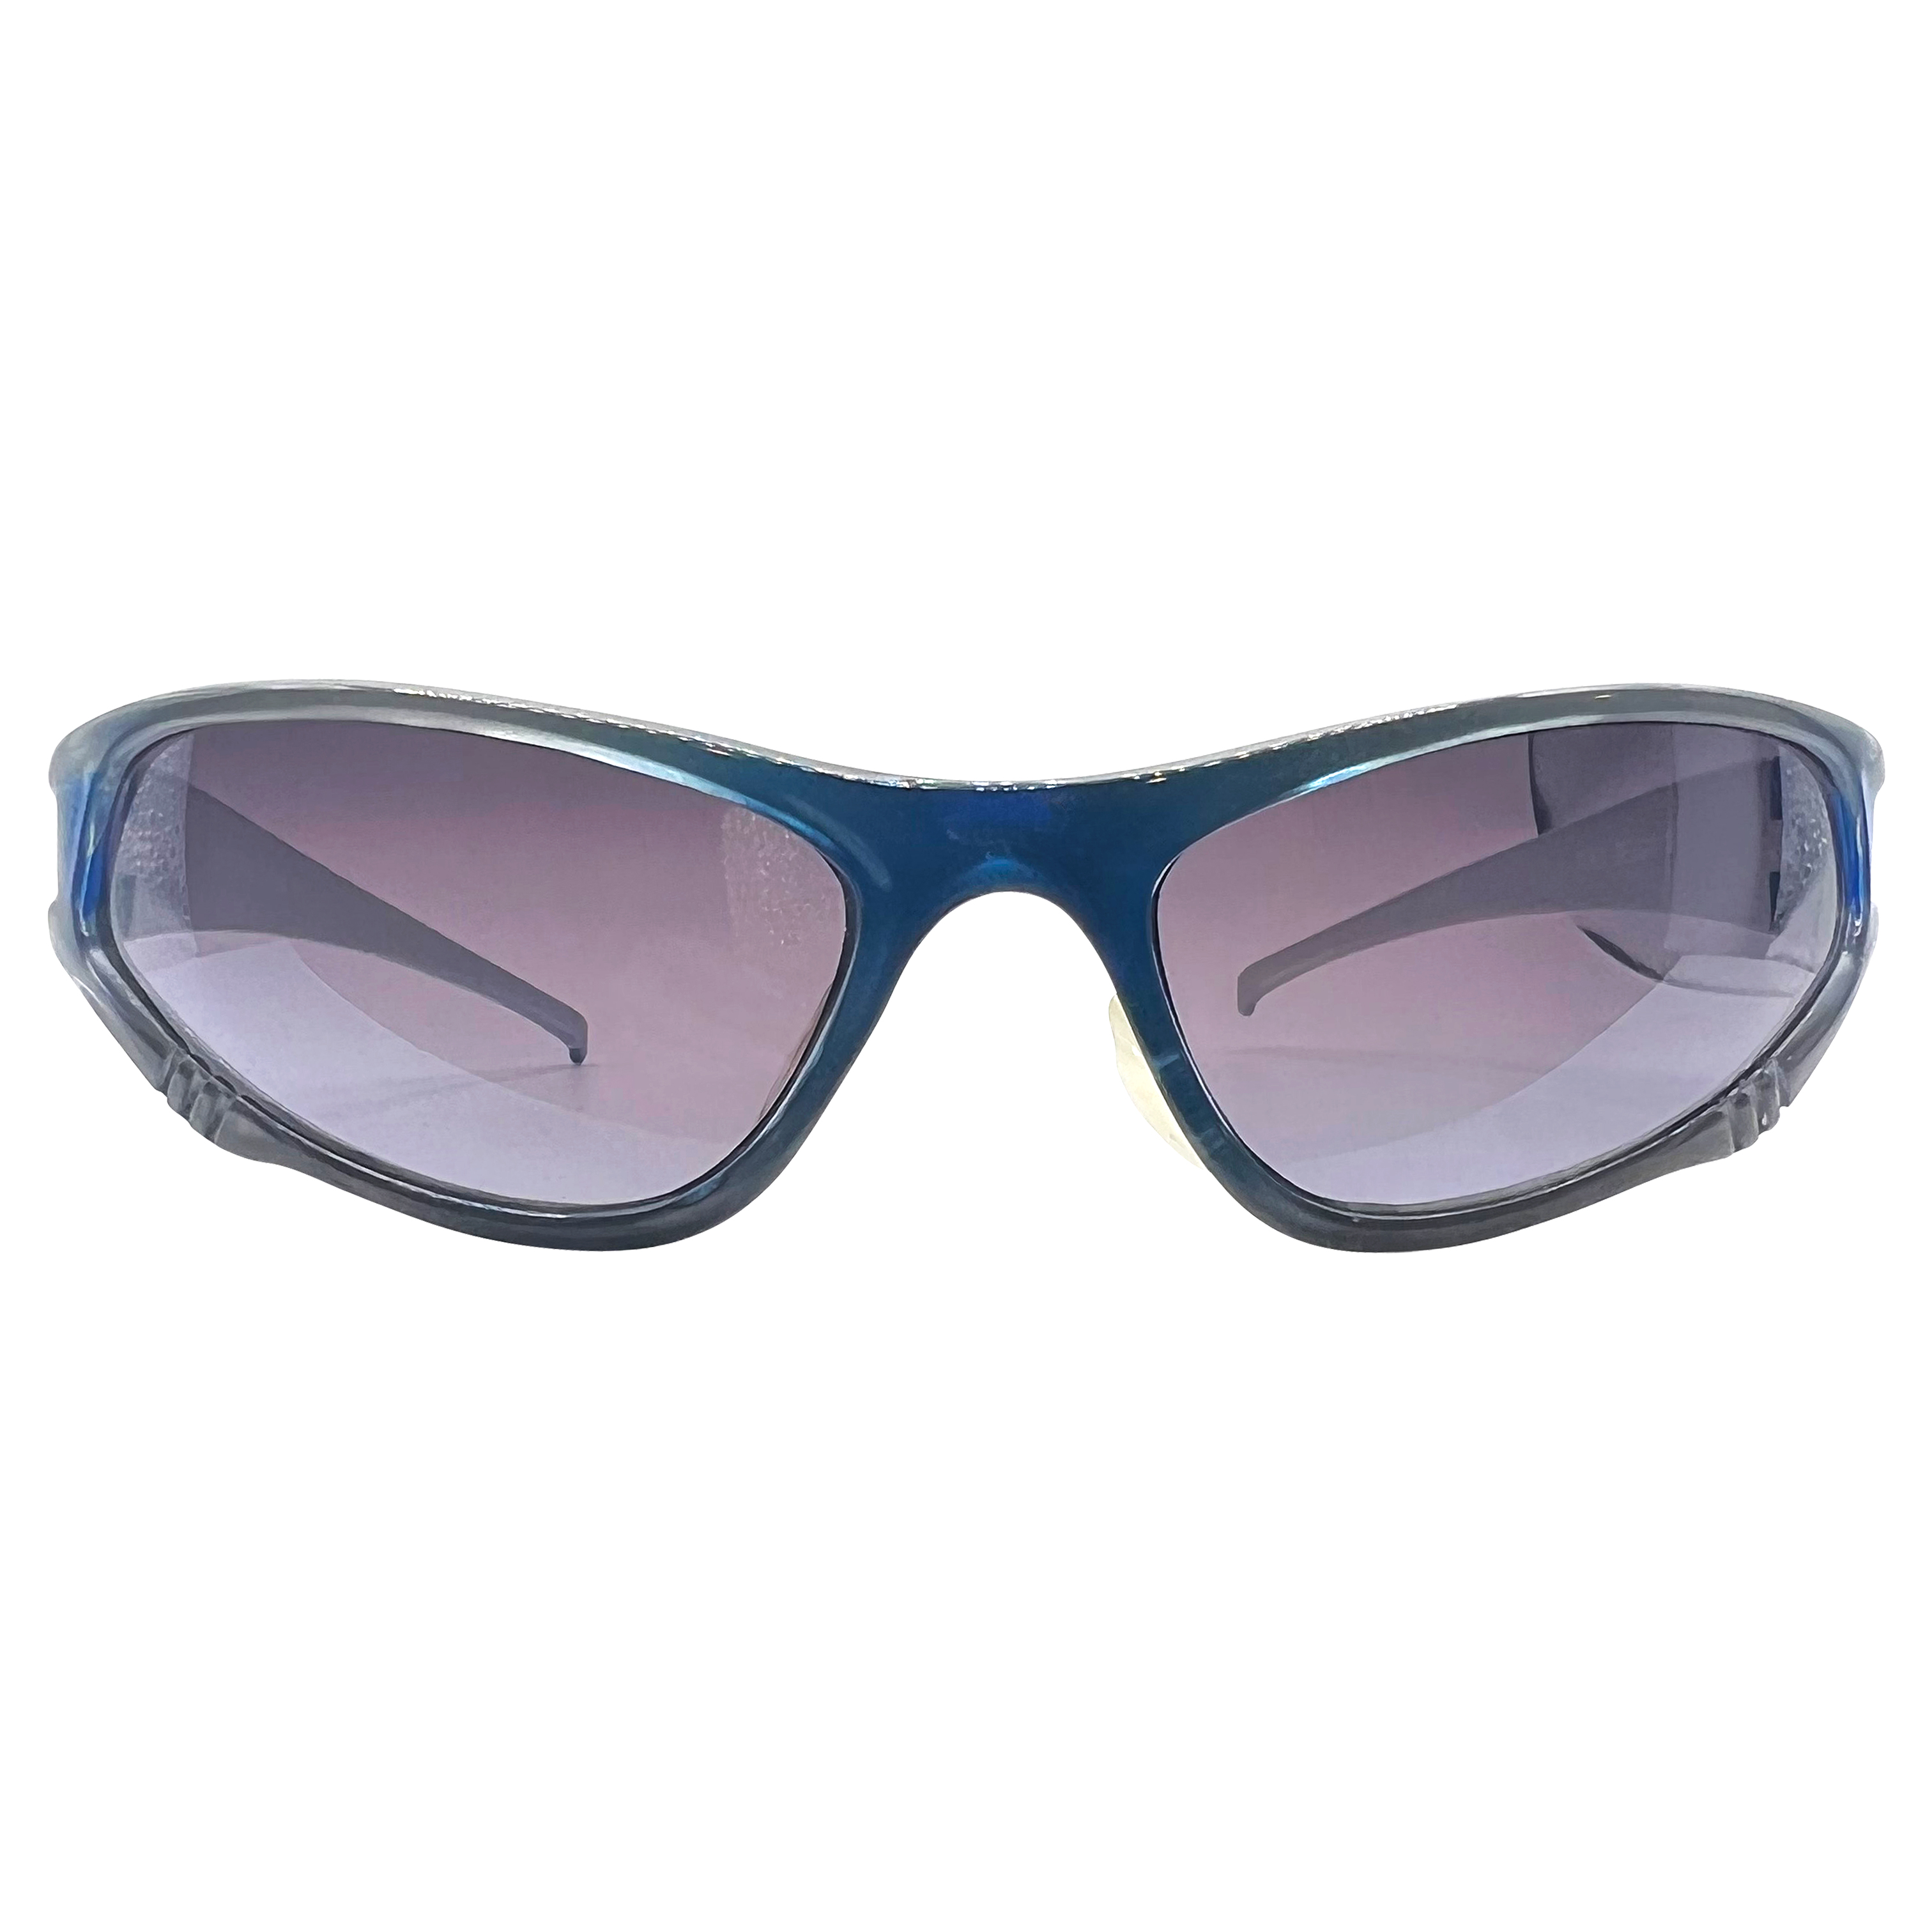 TWERK Smoke/Silver Blue Fashion Sports Sunglasses